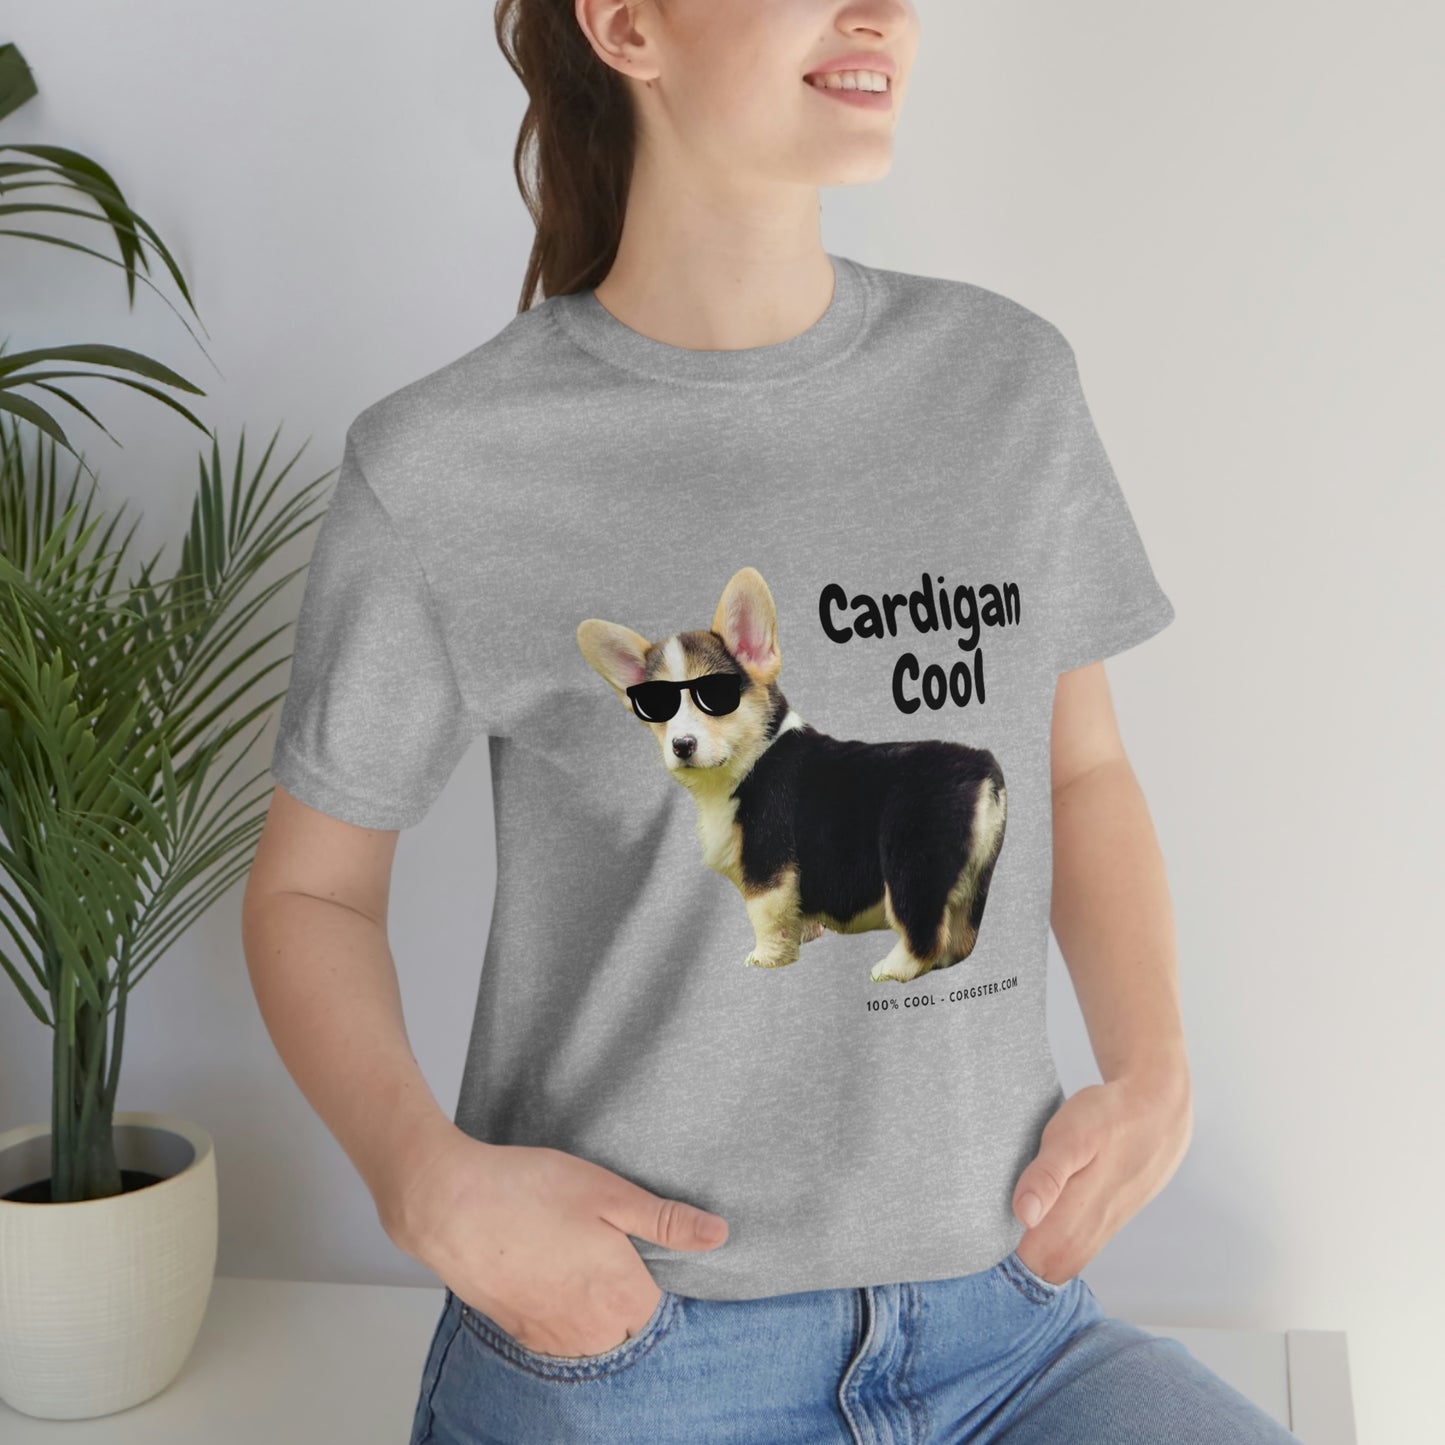 Cardigan Welsh Corgi - Cool Corgster